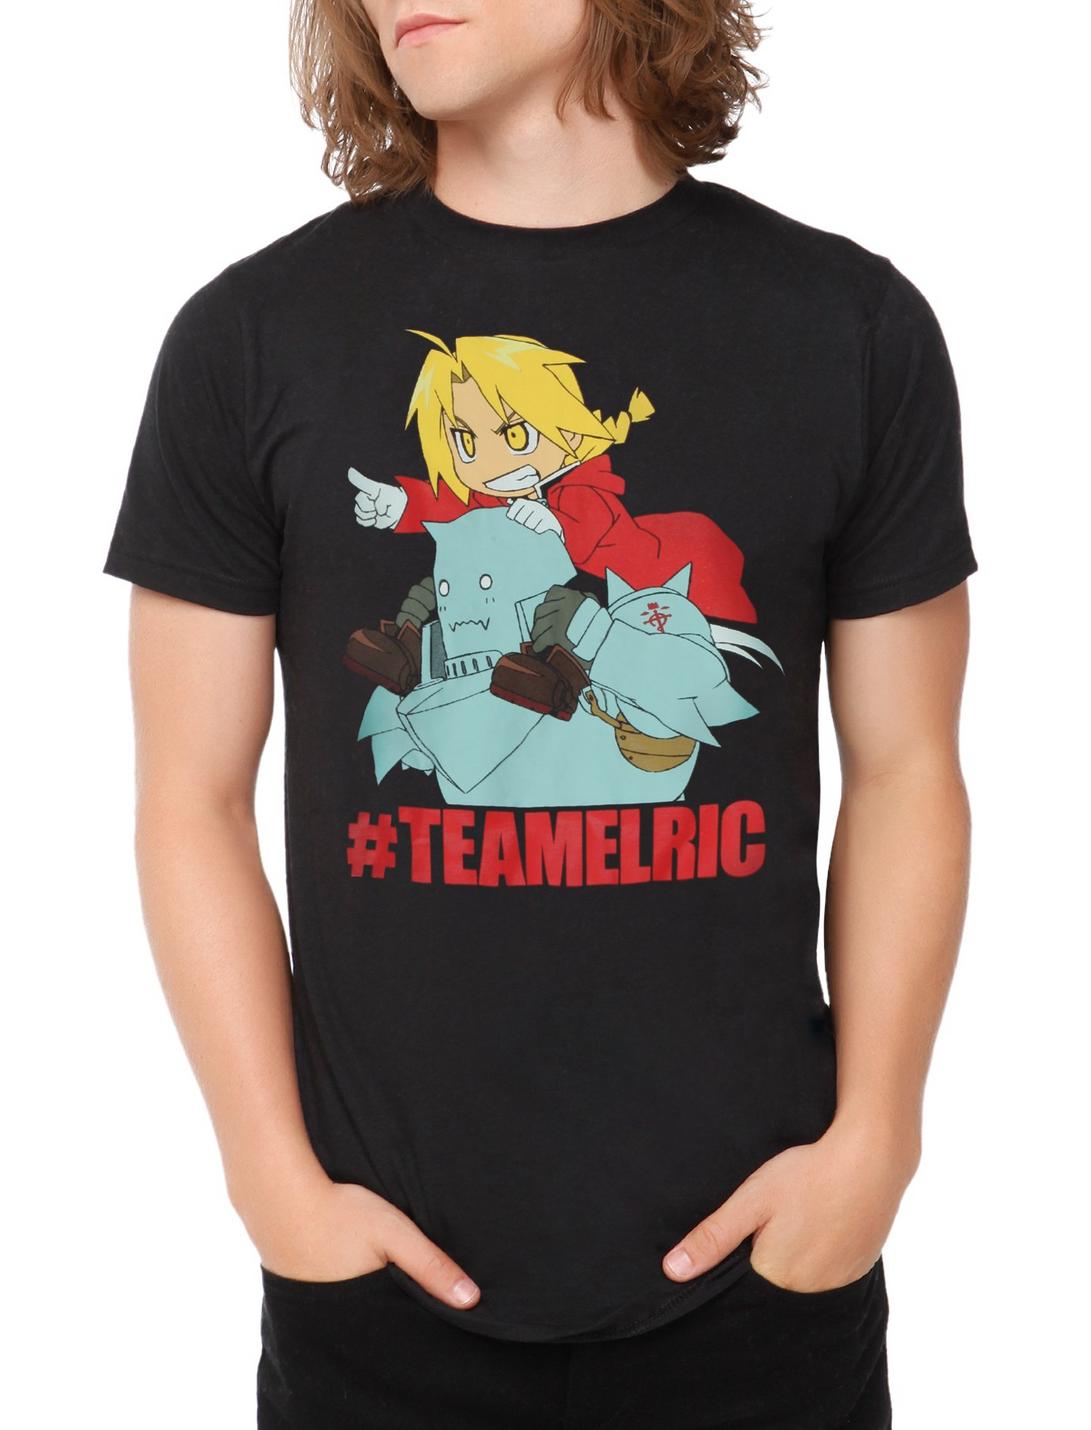 Fullmetal Alchemist #TeamElric T-Shirt, BLACK, hi-res